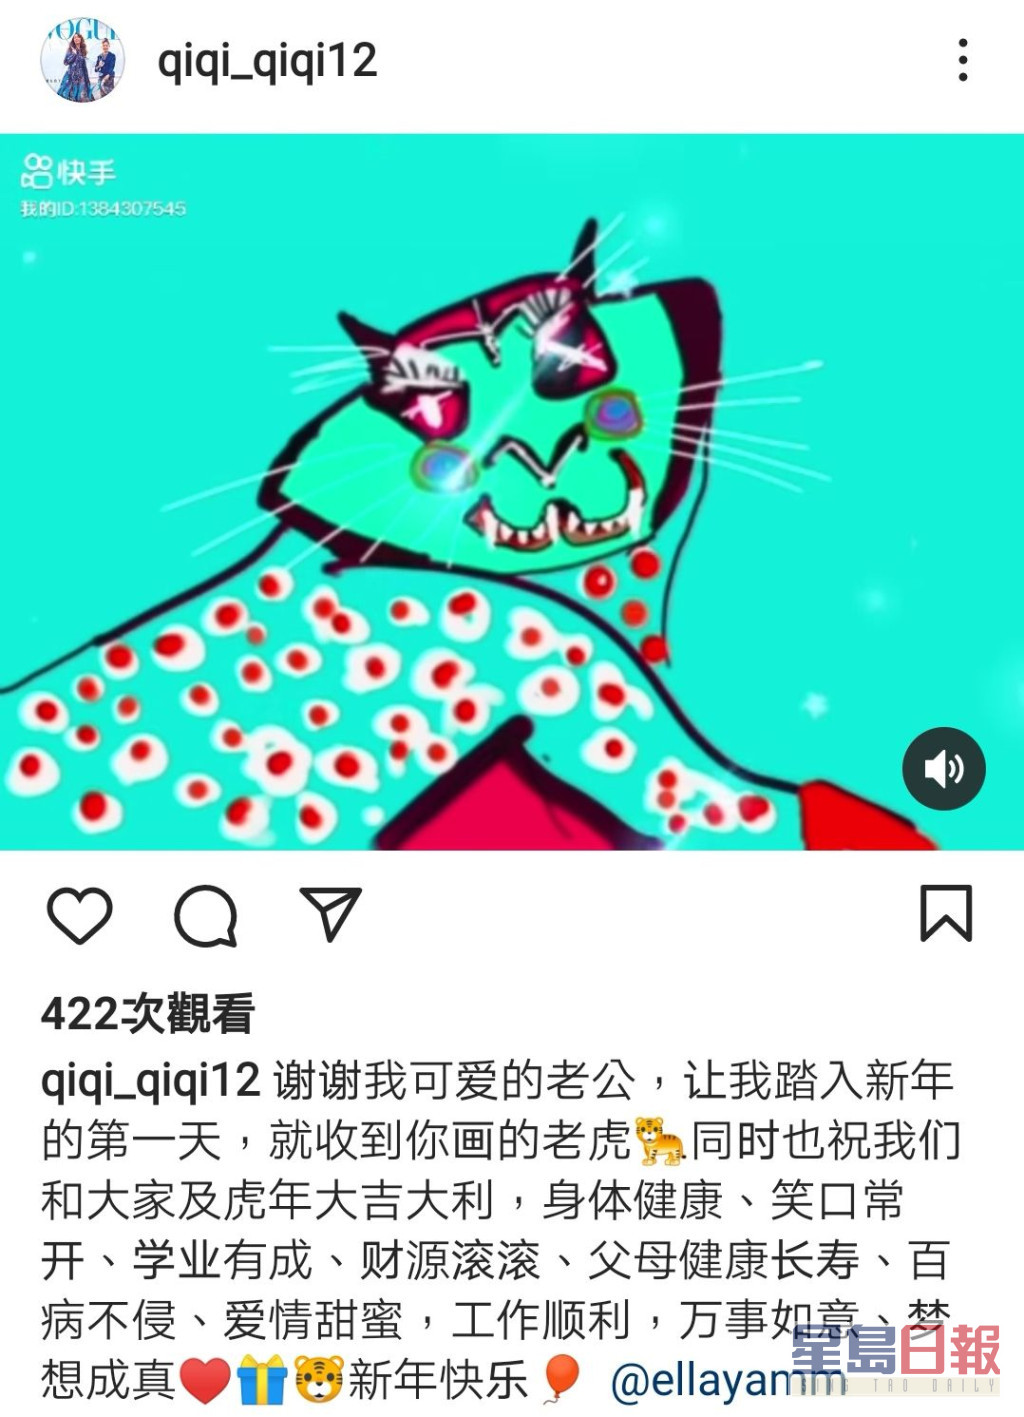 新年礼物 华哥为咗冧妻绘画嘅老虎图，画功唔错。